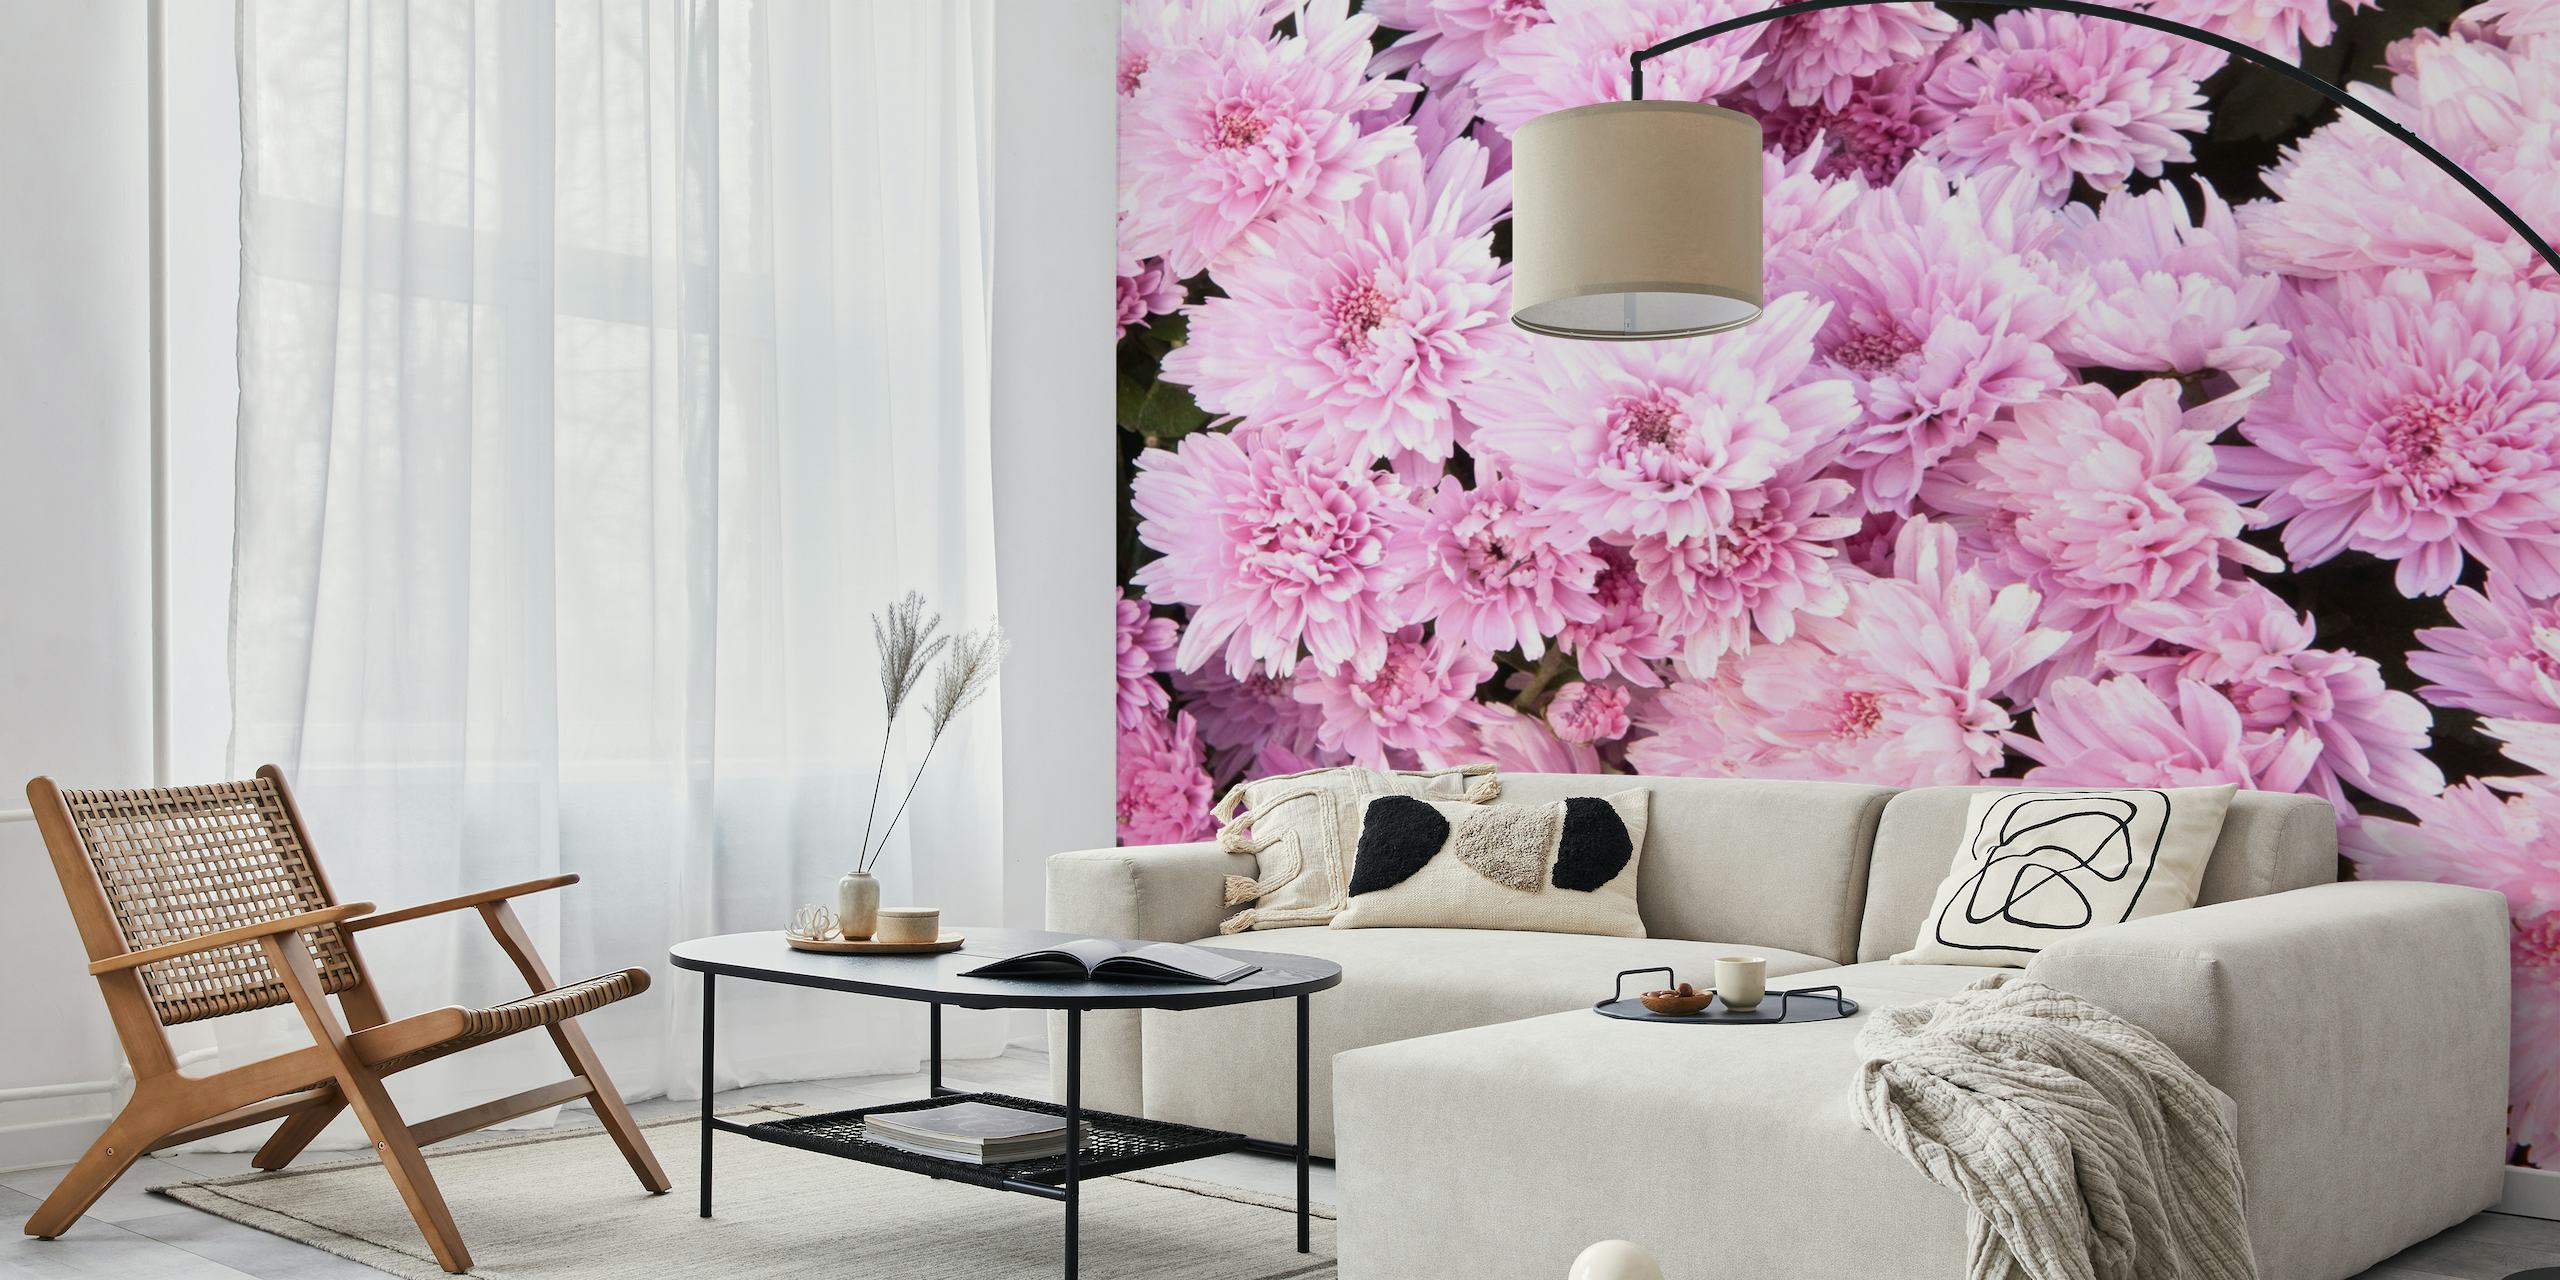 Bløde lyserøde krysantemumblomster fylder rammen og skaber et frodigt blomstret vægmaleri